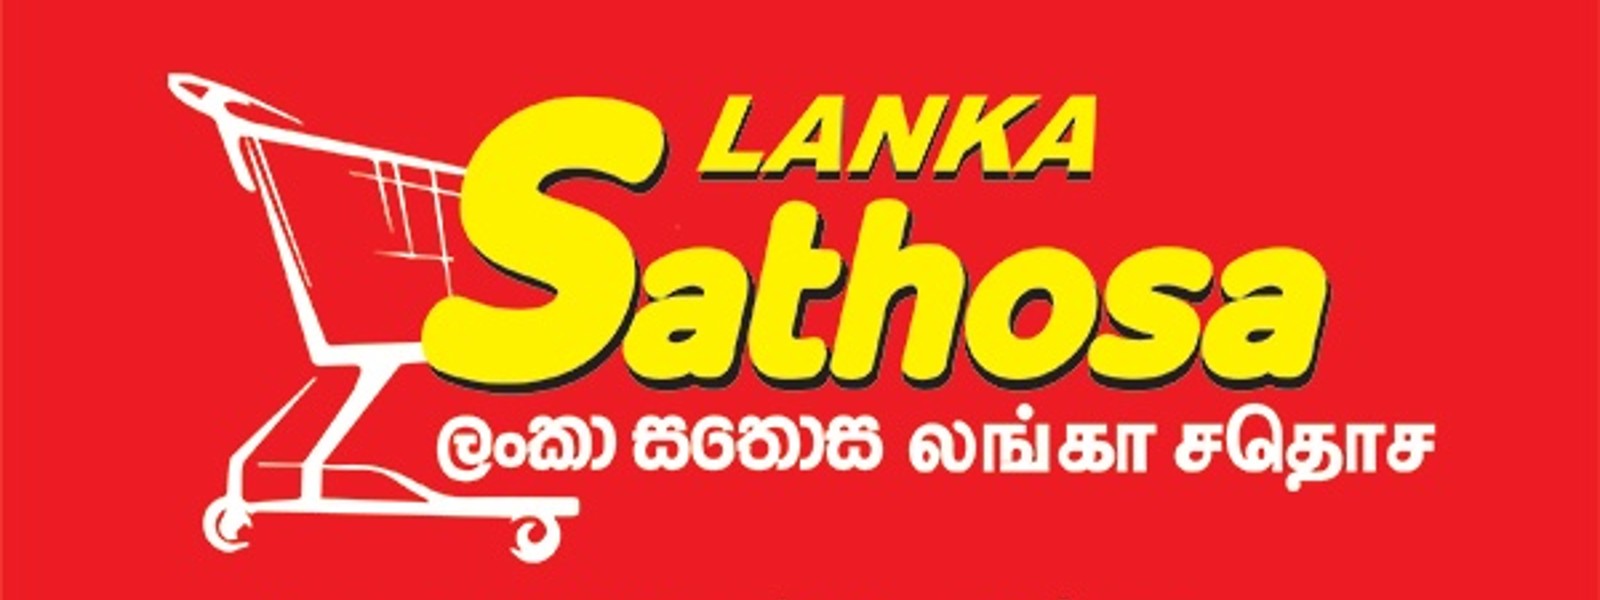 Price Drop: Sathosa revises prices of kekulu, nadu, dhal, onions, sugar